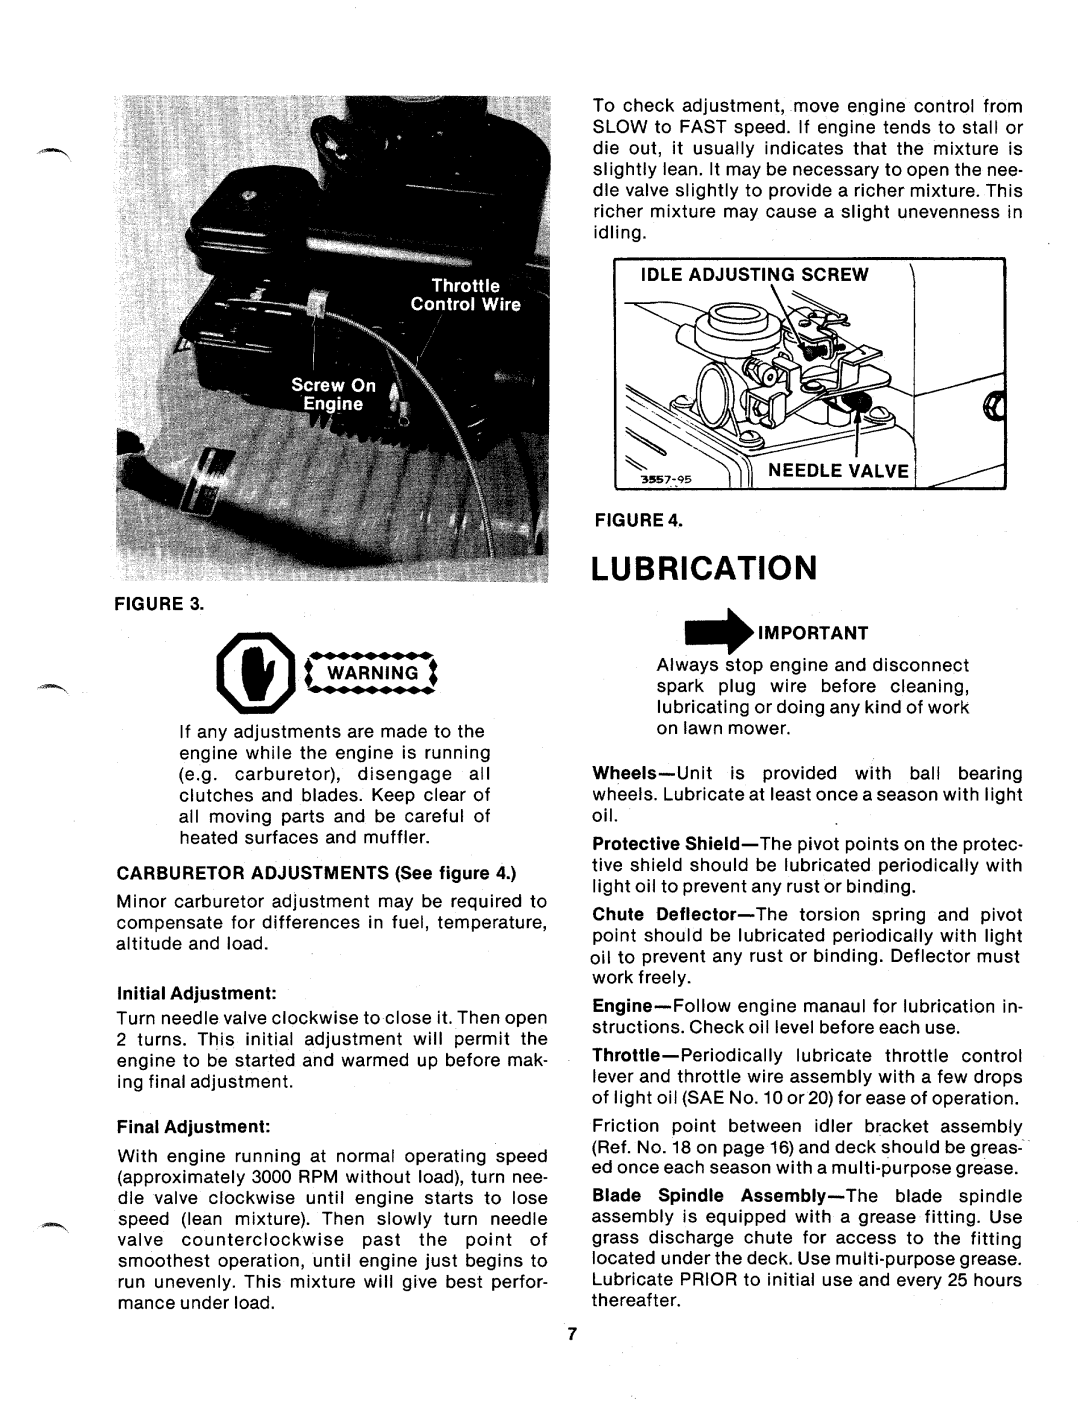 MTD 110-530A manual 